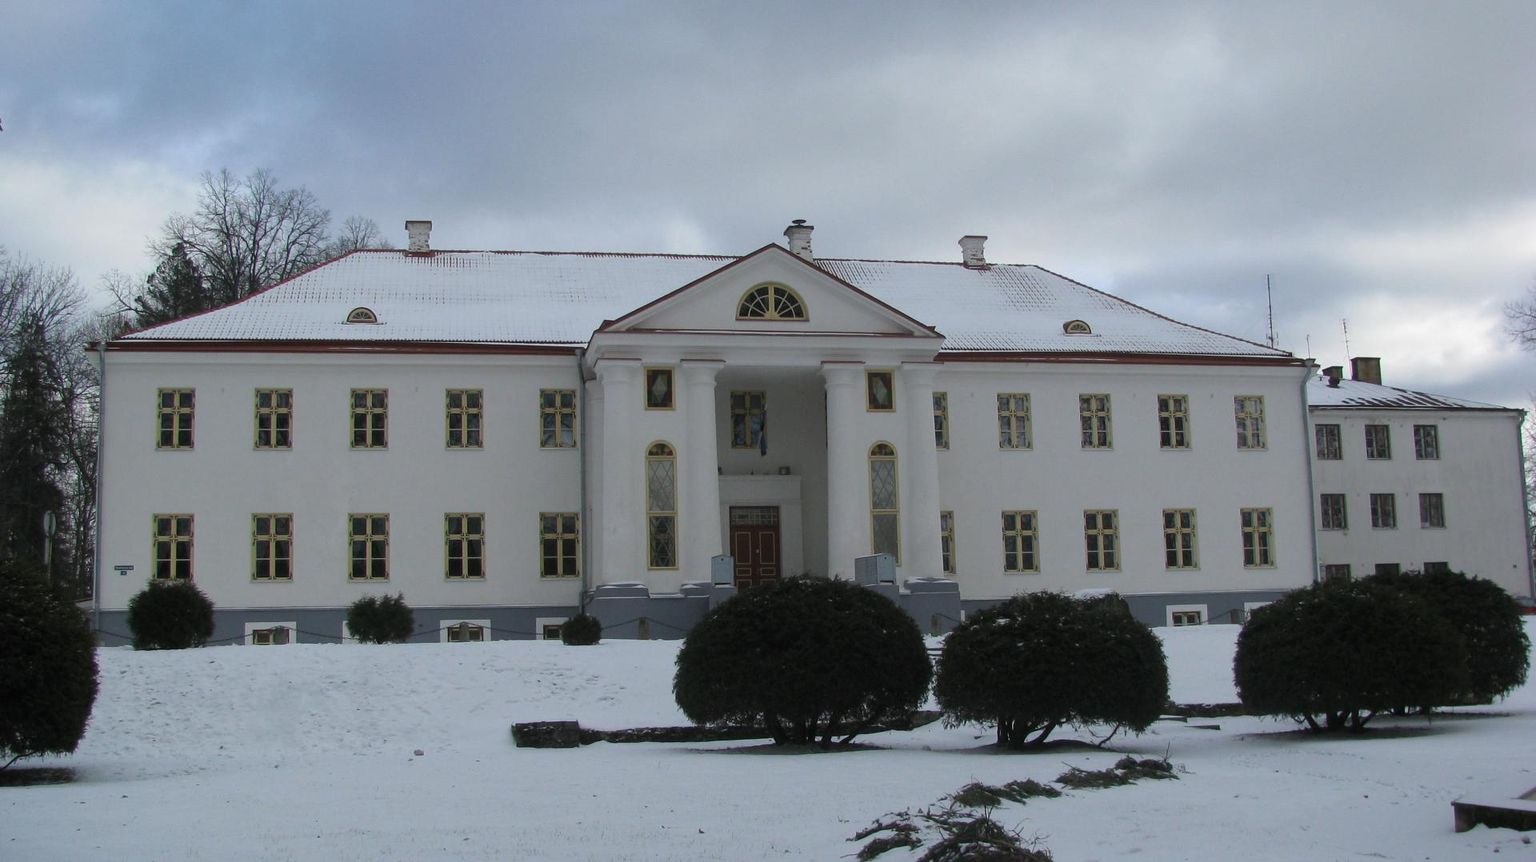 Voltveti mõisa häärber valmis 1830. aastal, riigistamise järel avati seal 1925. aastal Eesti esimene metsanduskool.